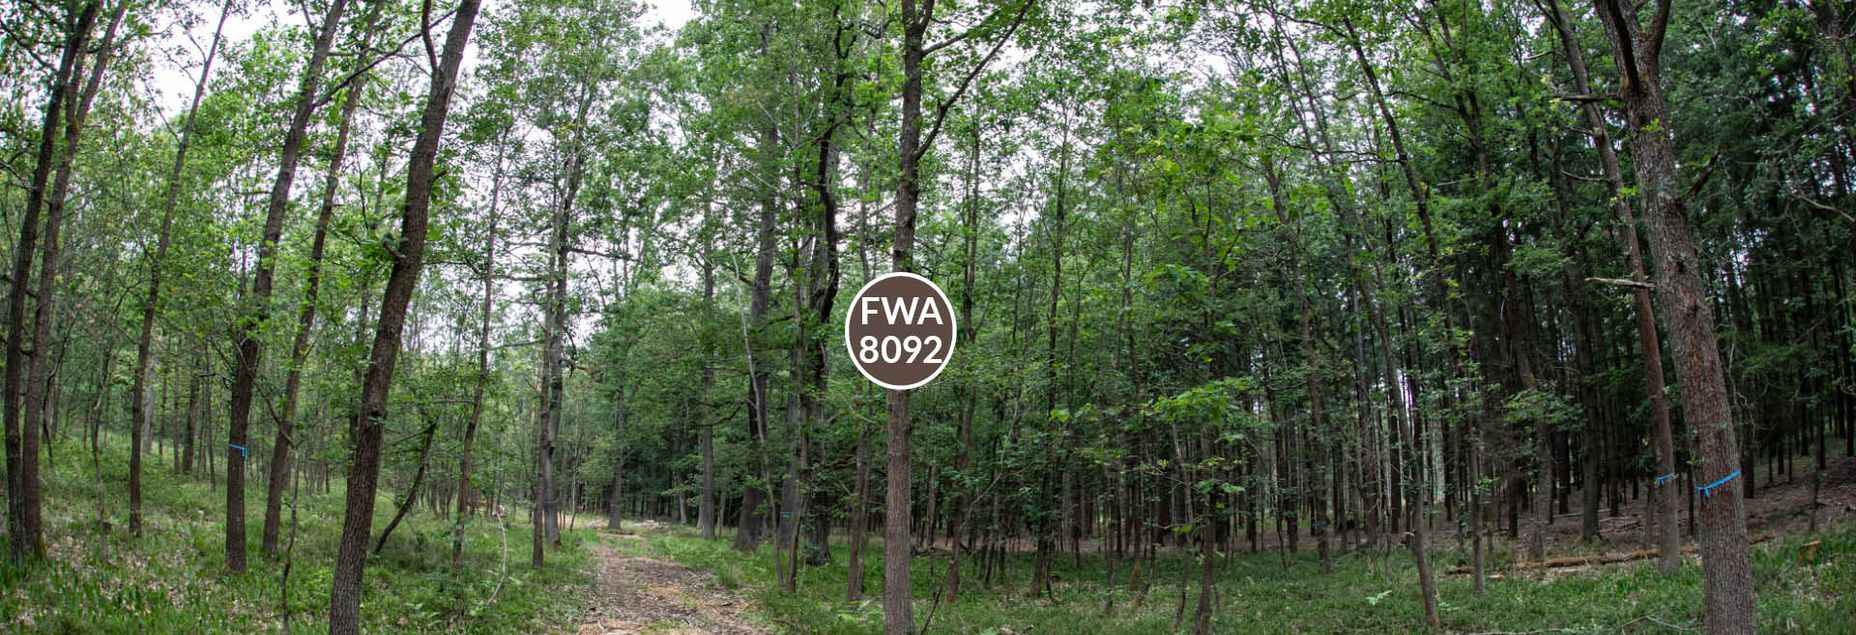 FriedWald-Onlineshop FWA 8092